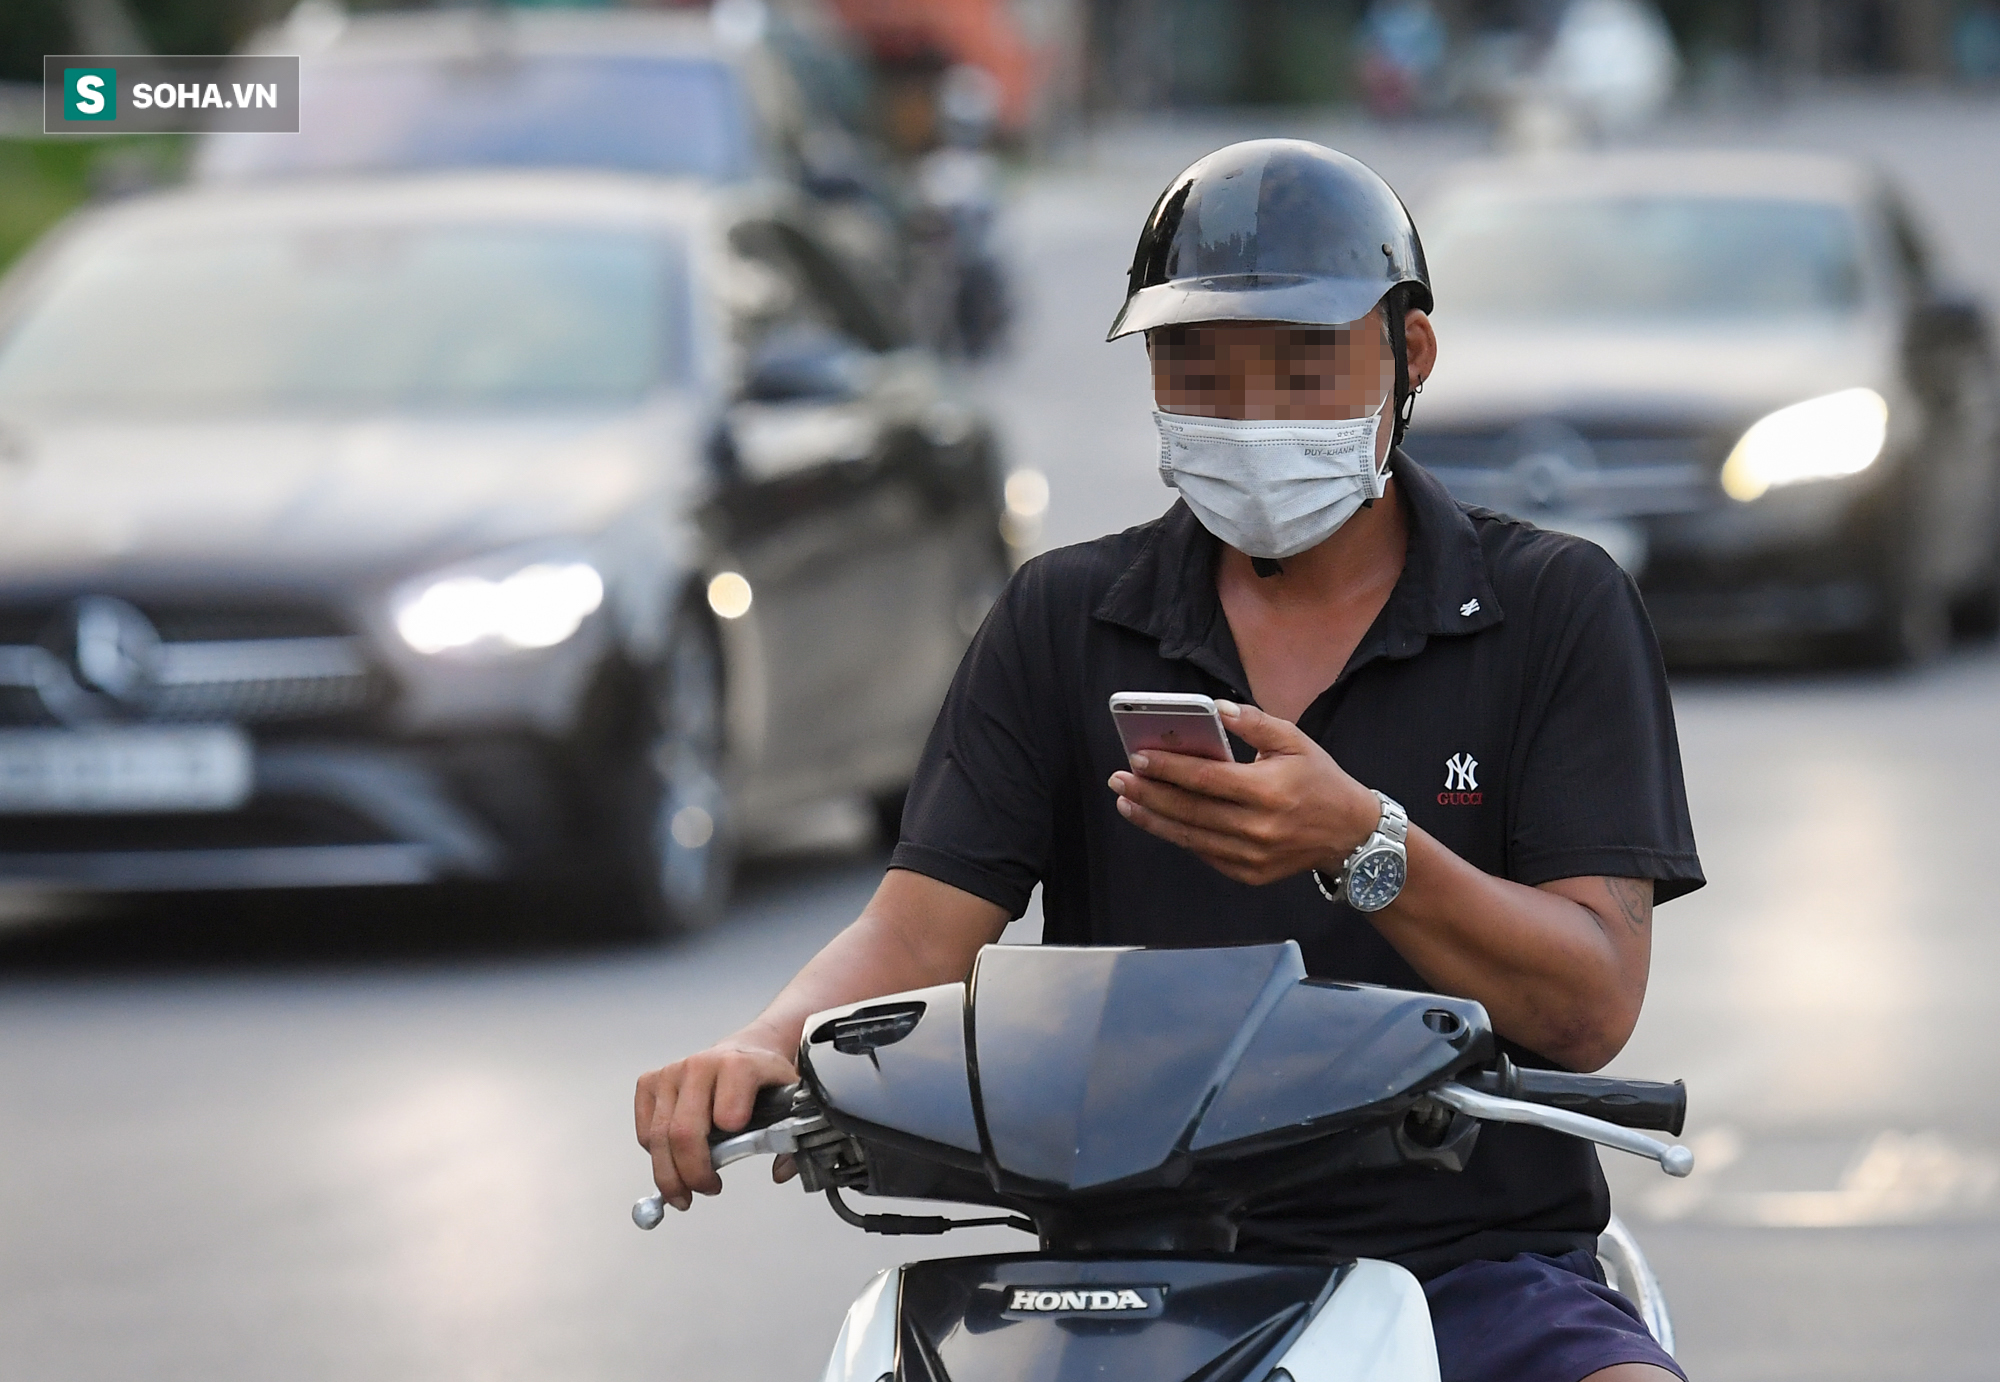 Ra đường mùa dịch: Nhiều người ở Hà Nội nhớ khẩu trang nhưng quên luật giao thông - Ảnh 7.